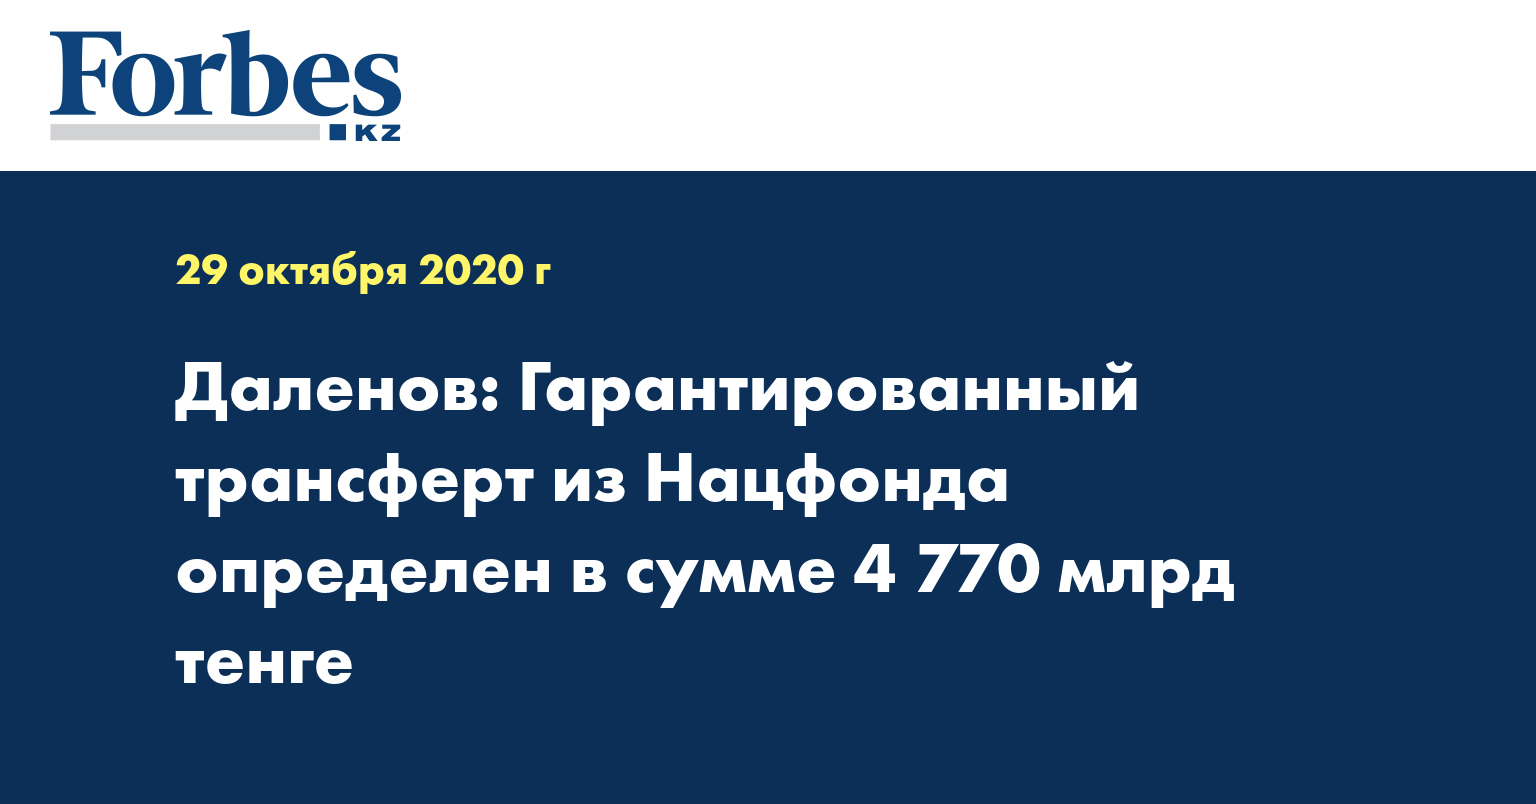 Даленов: Гарантированный трансферт из Нацфонда определен в сумме 4 770 млрд тенге